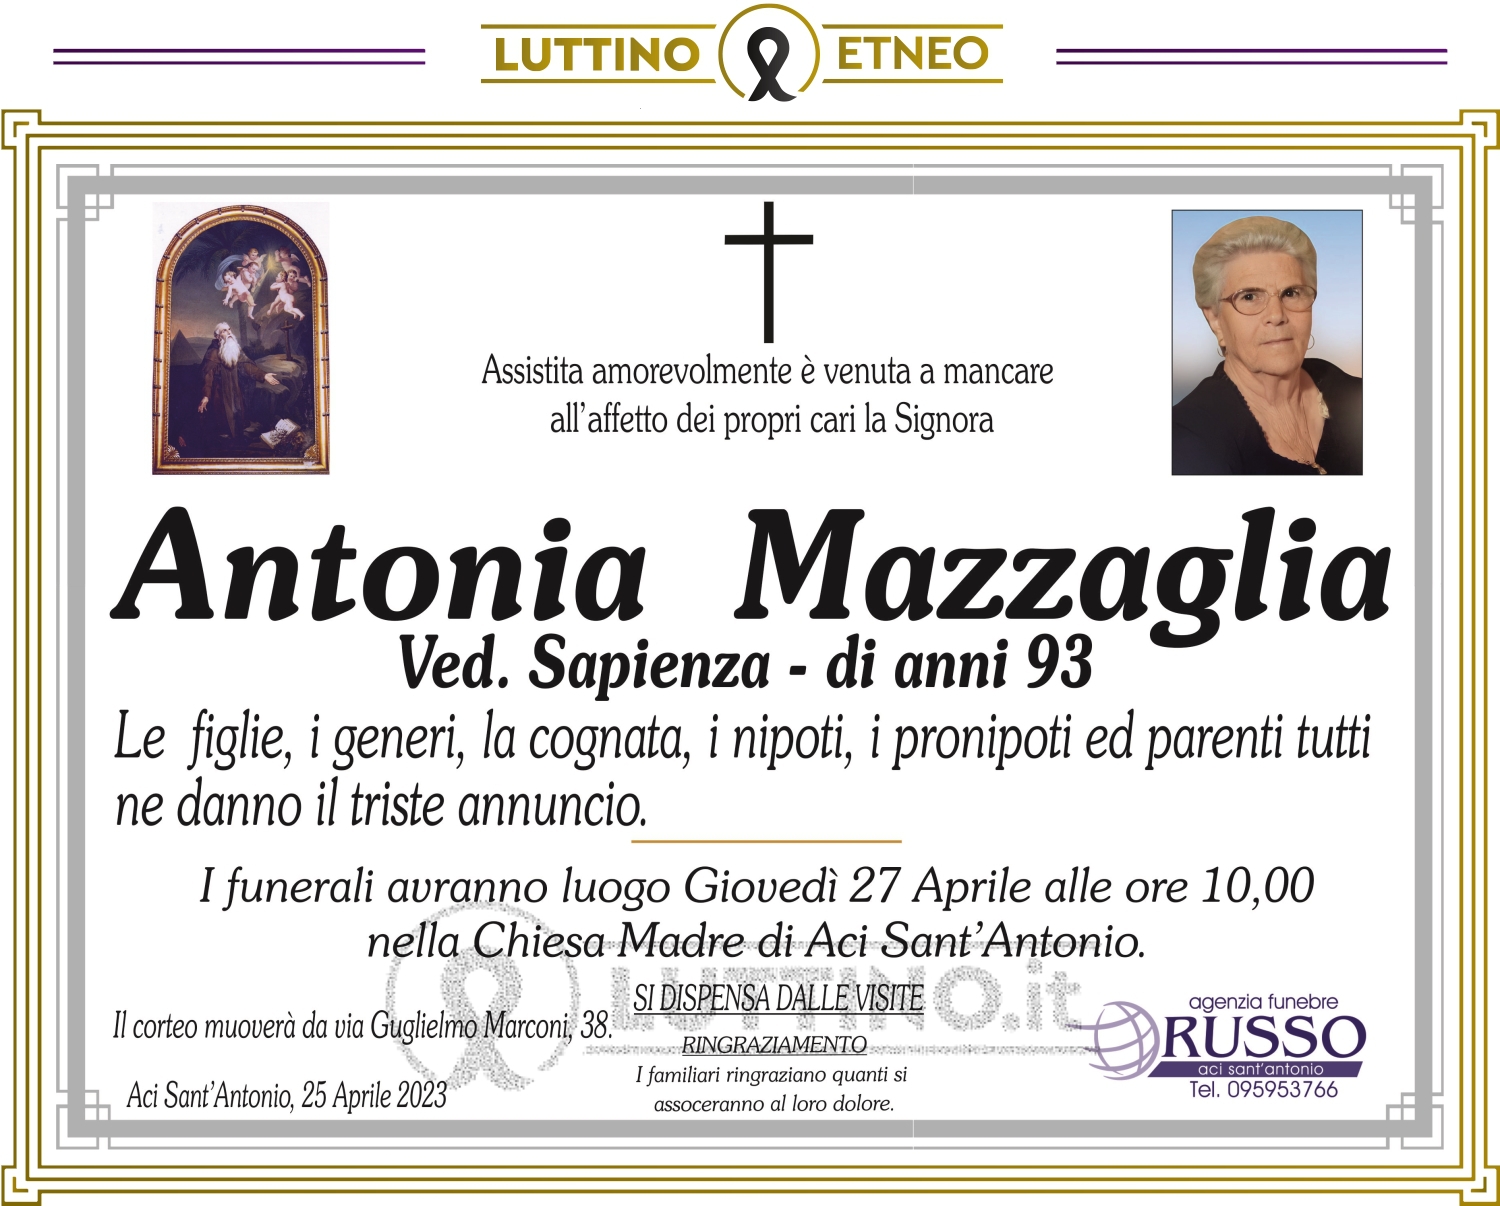 Antonia Mazzaglia